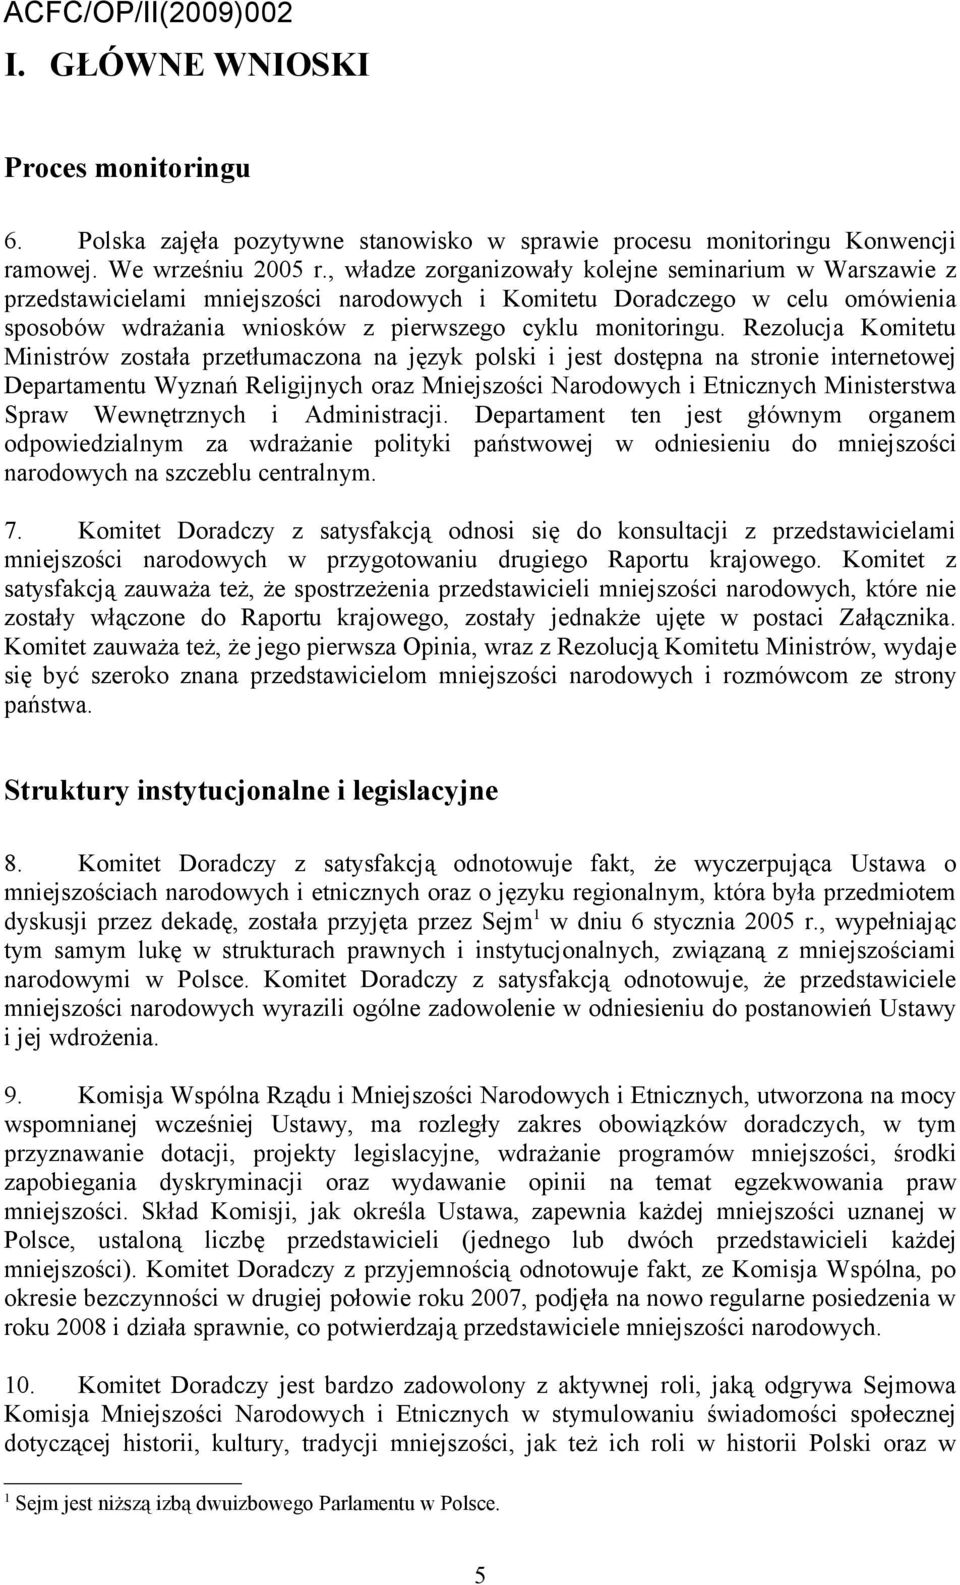 Rezolucja Komitetu Ministrów została przetłumaczona na język polski i jest dostępna na stronie internetowej Departamentu Wyznań Religijnych oraz Mniejszości Narodowych i Etnicznych Ministerstwa Spraw